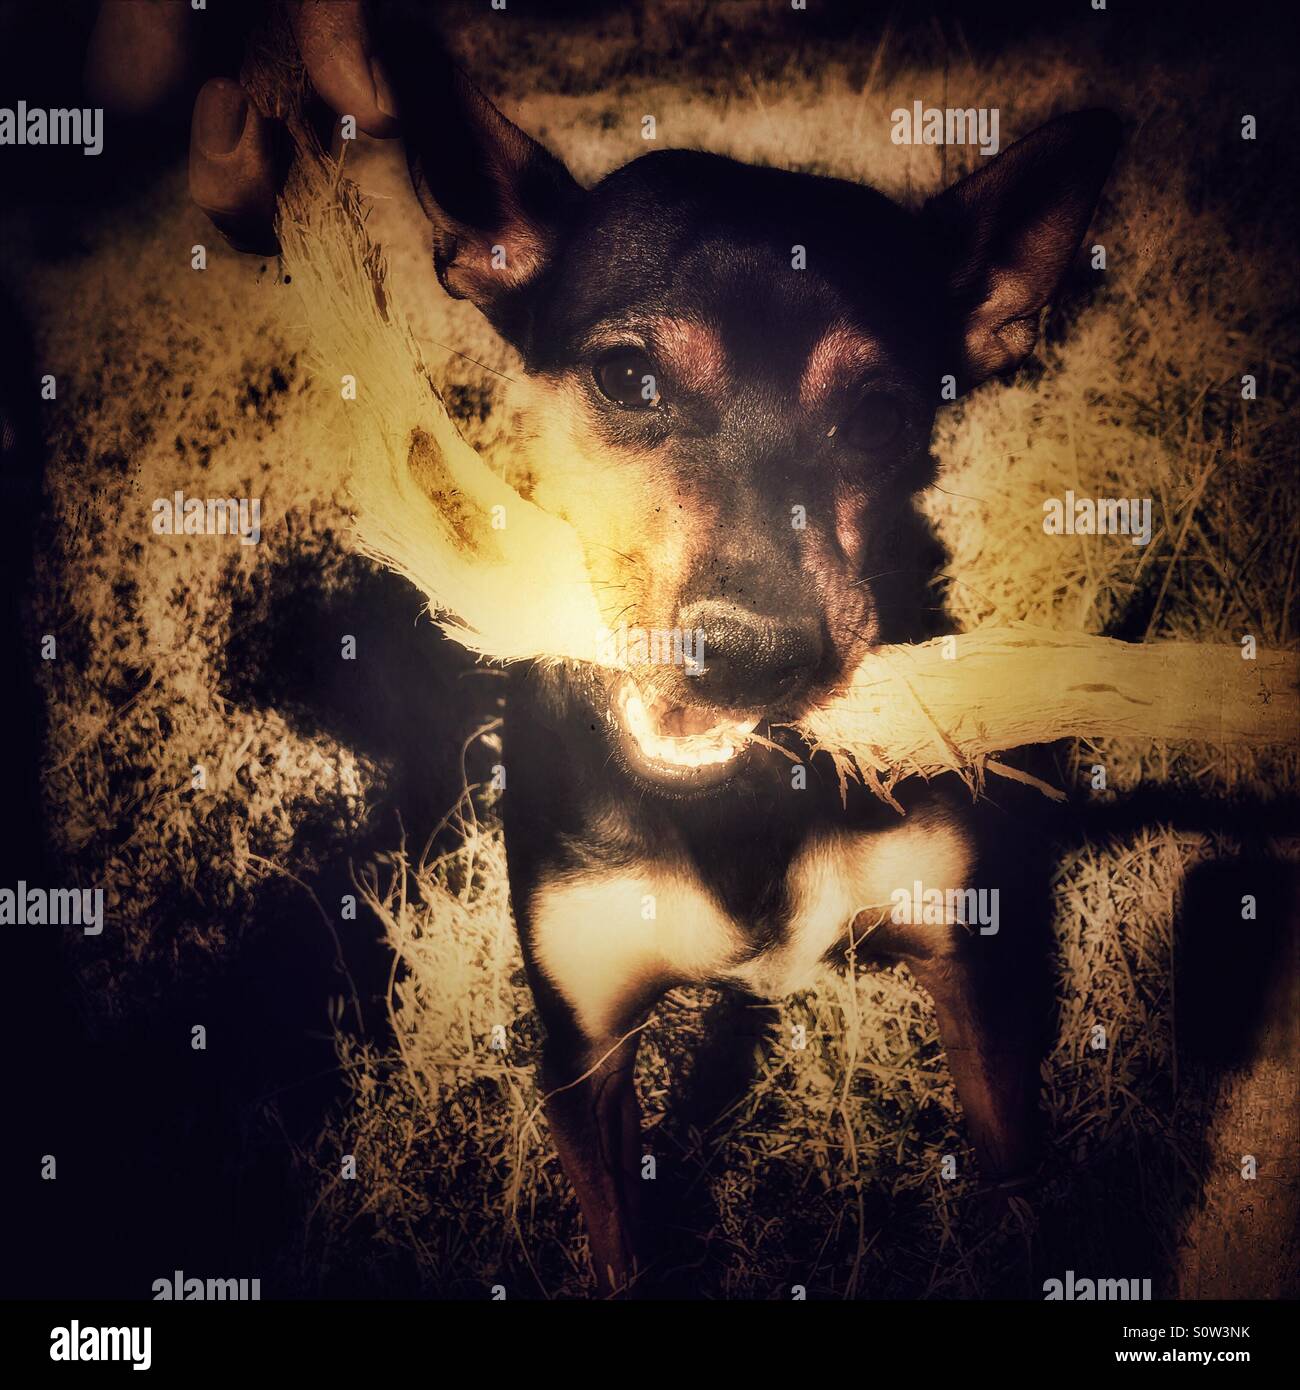 Hund mit Stock, dramatische Blitz Stockfotografie - Alamy